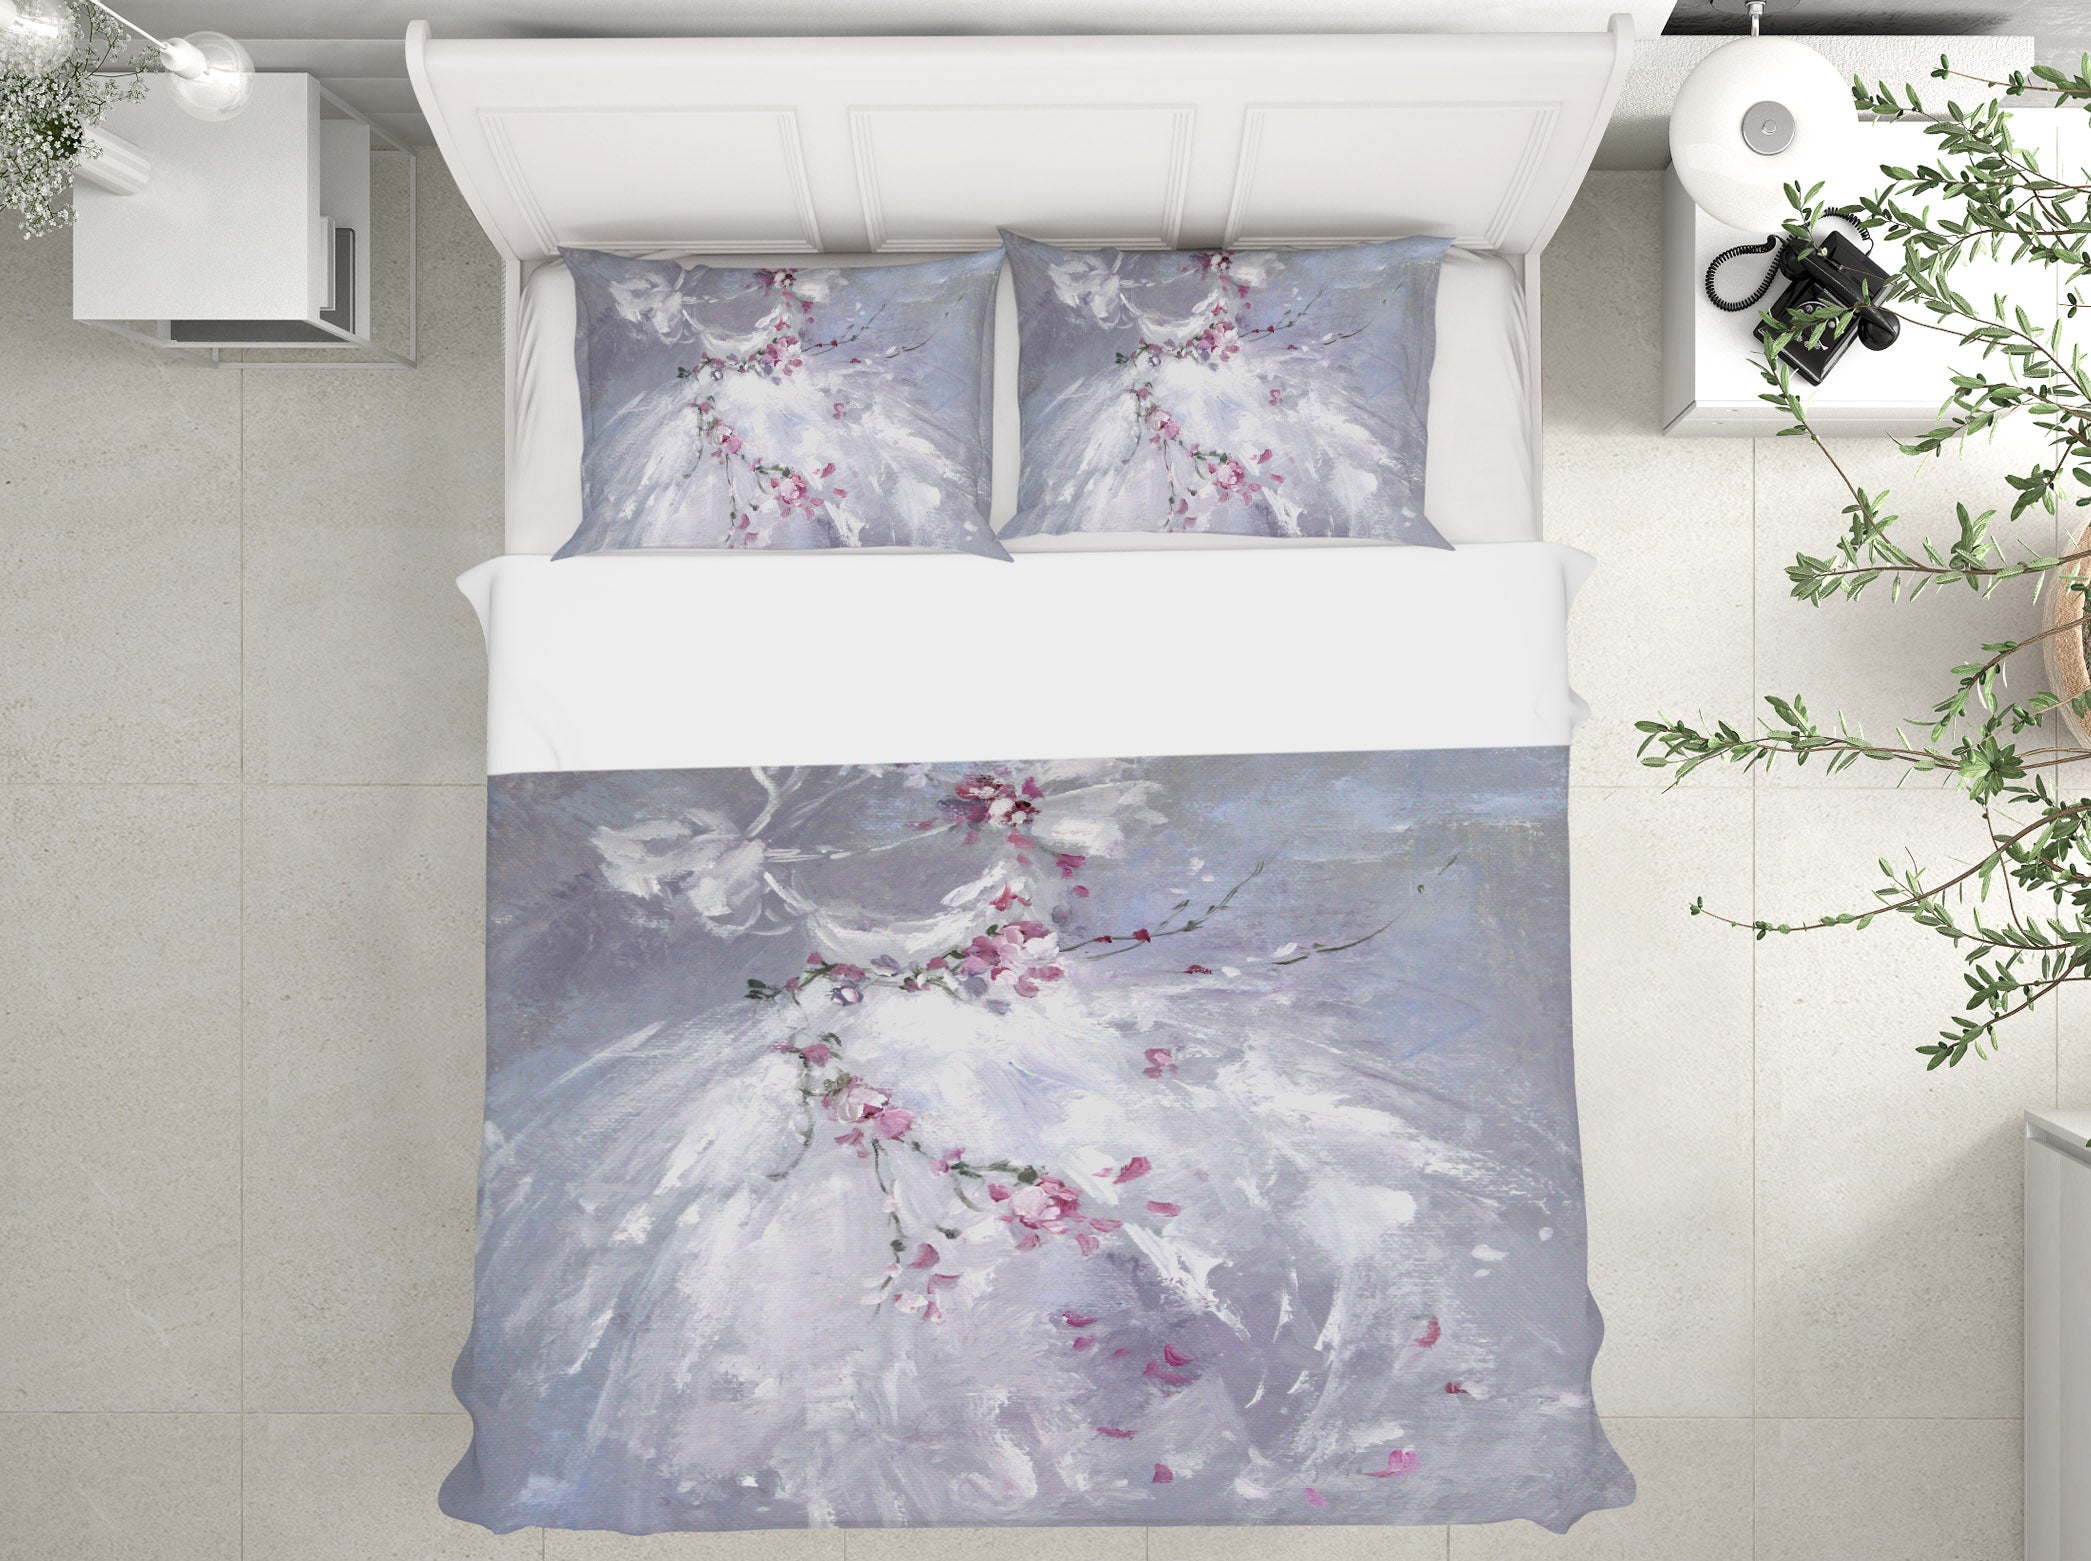 3D White Skirt Flower Vine 2061 Debi Coules Bedding Bed Pillowcases Quilt